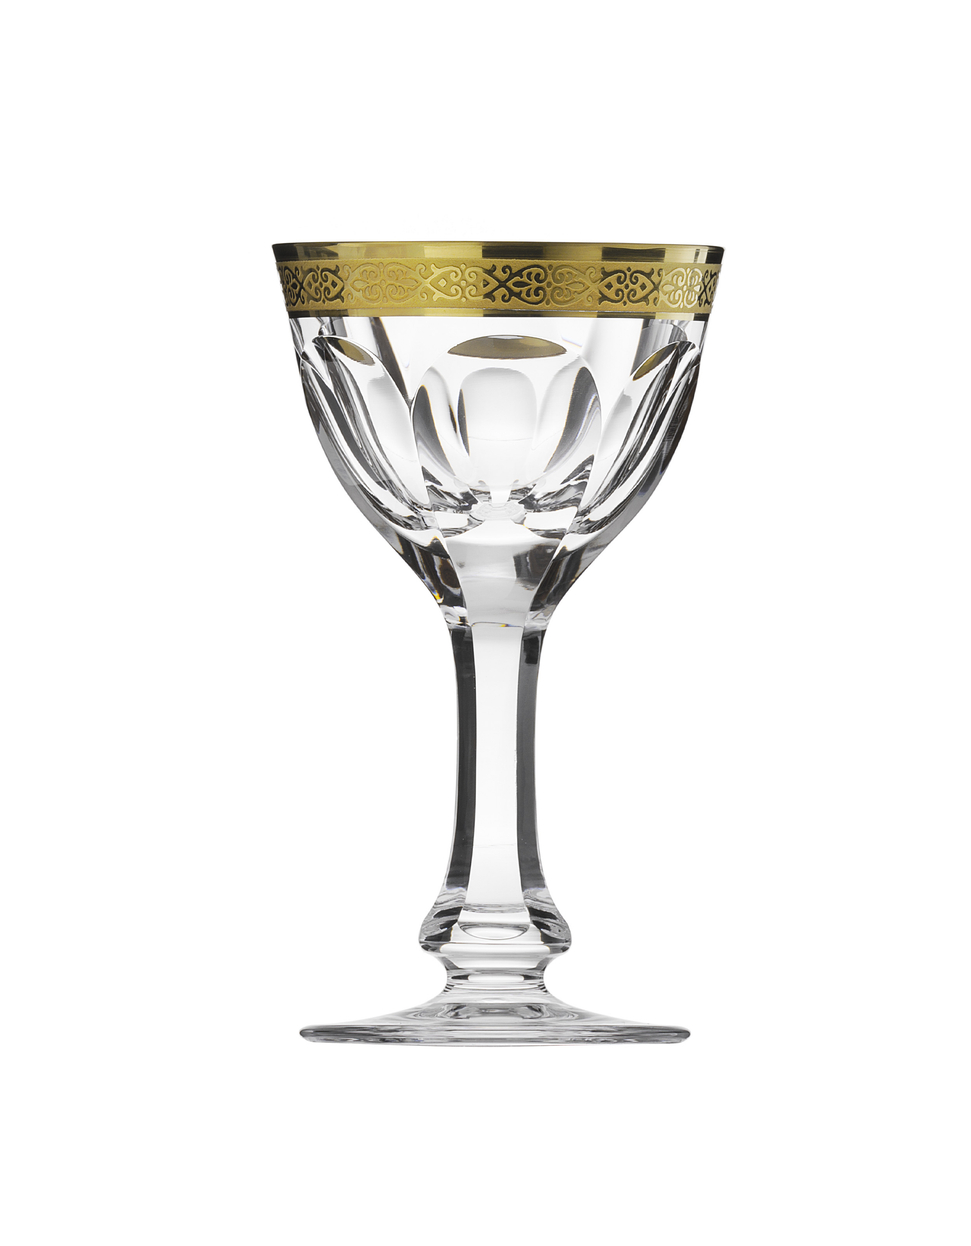 Lady Hamilton sherry glass, 65 ml